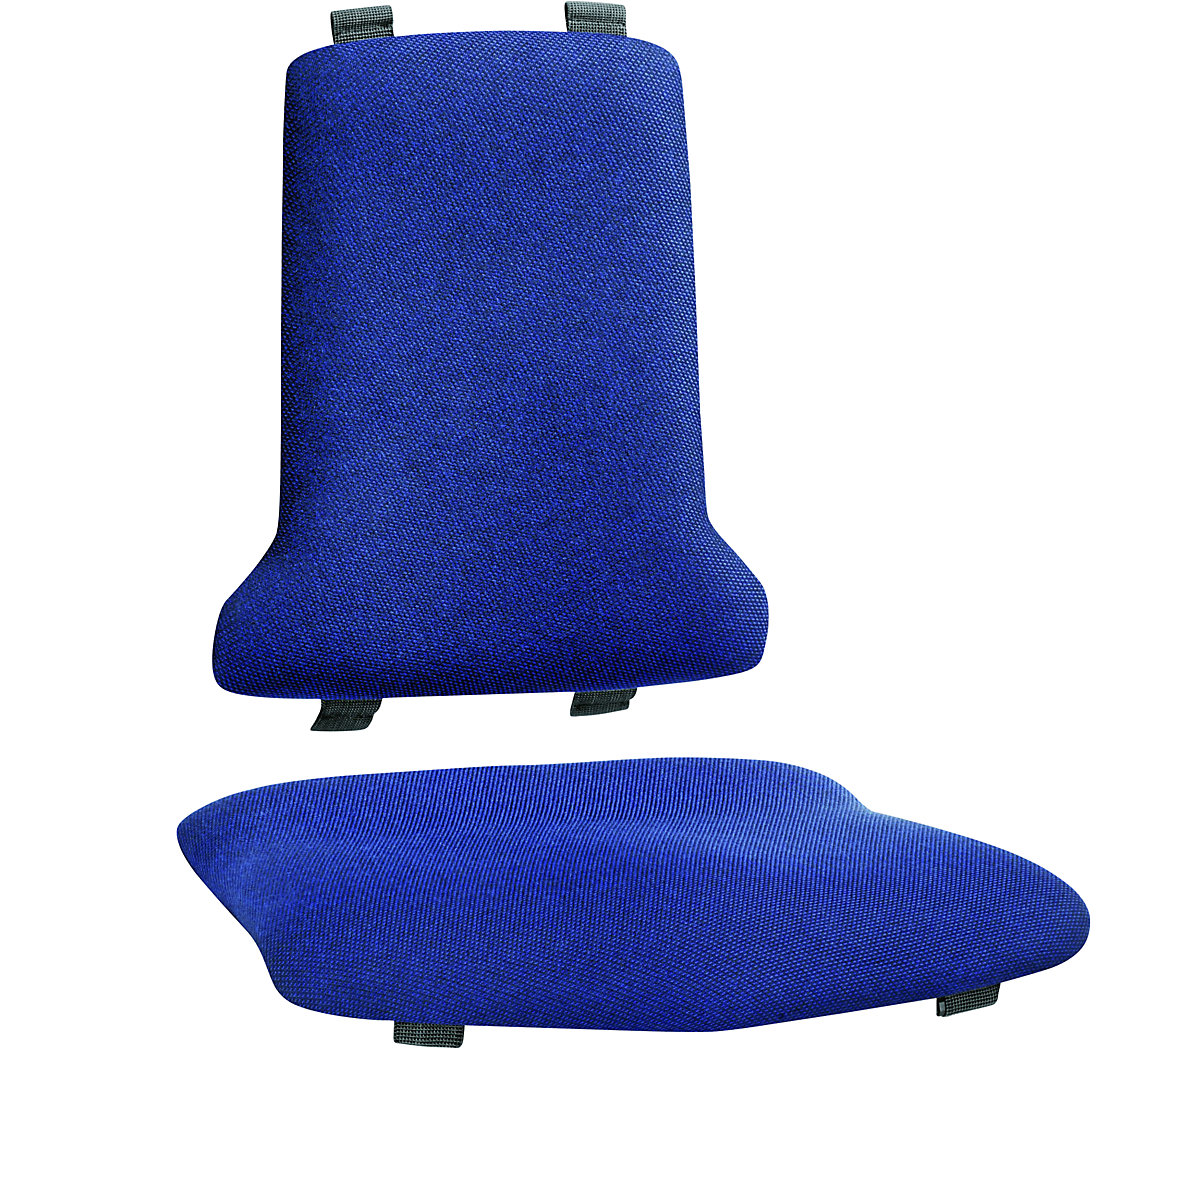 bimos – Obicie, wersja standardowa, po 1 obiciu na siedzisko i oparcie, obicie tekstylne, niebieski